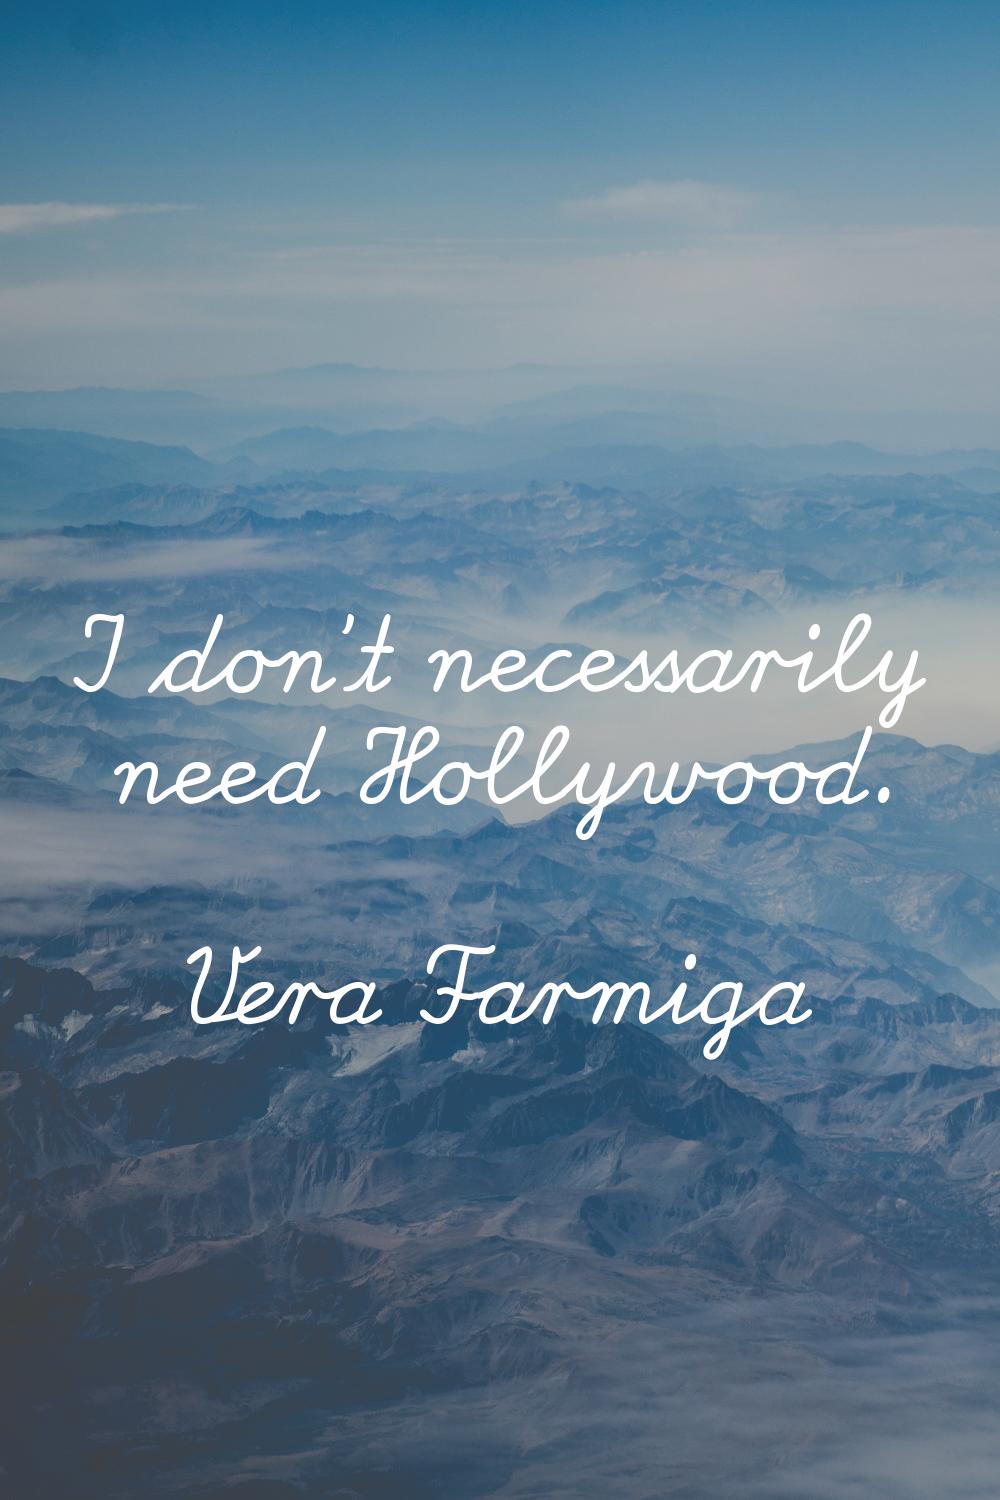 I don't necessarily need Hollywood.